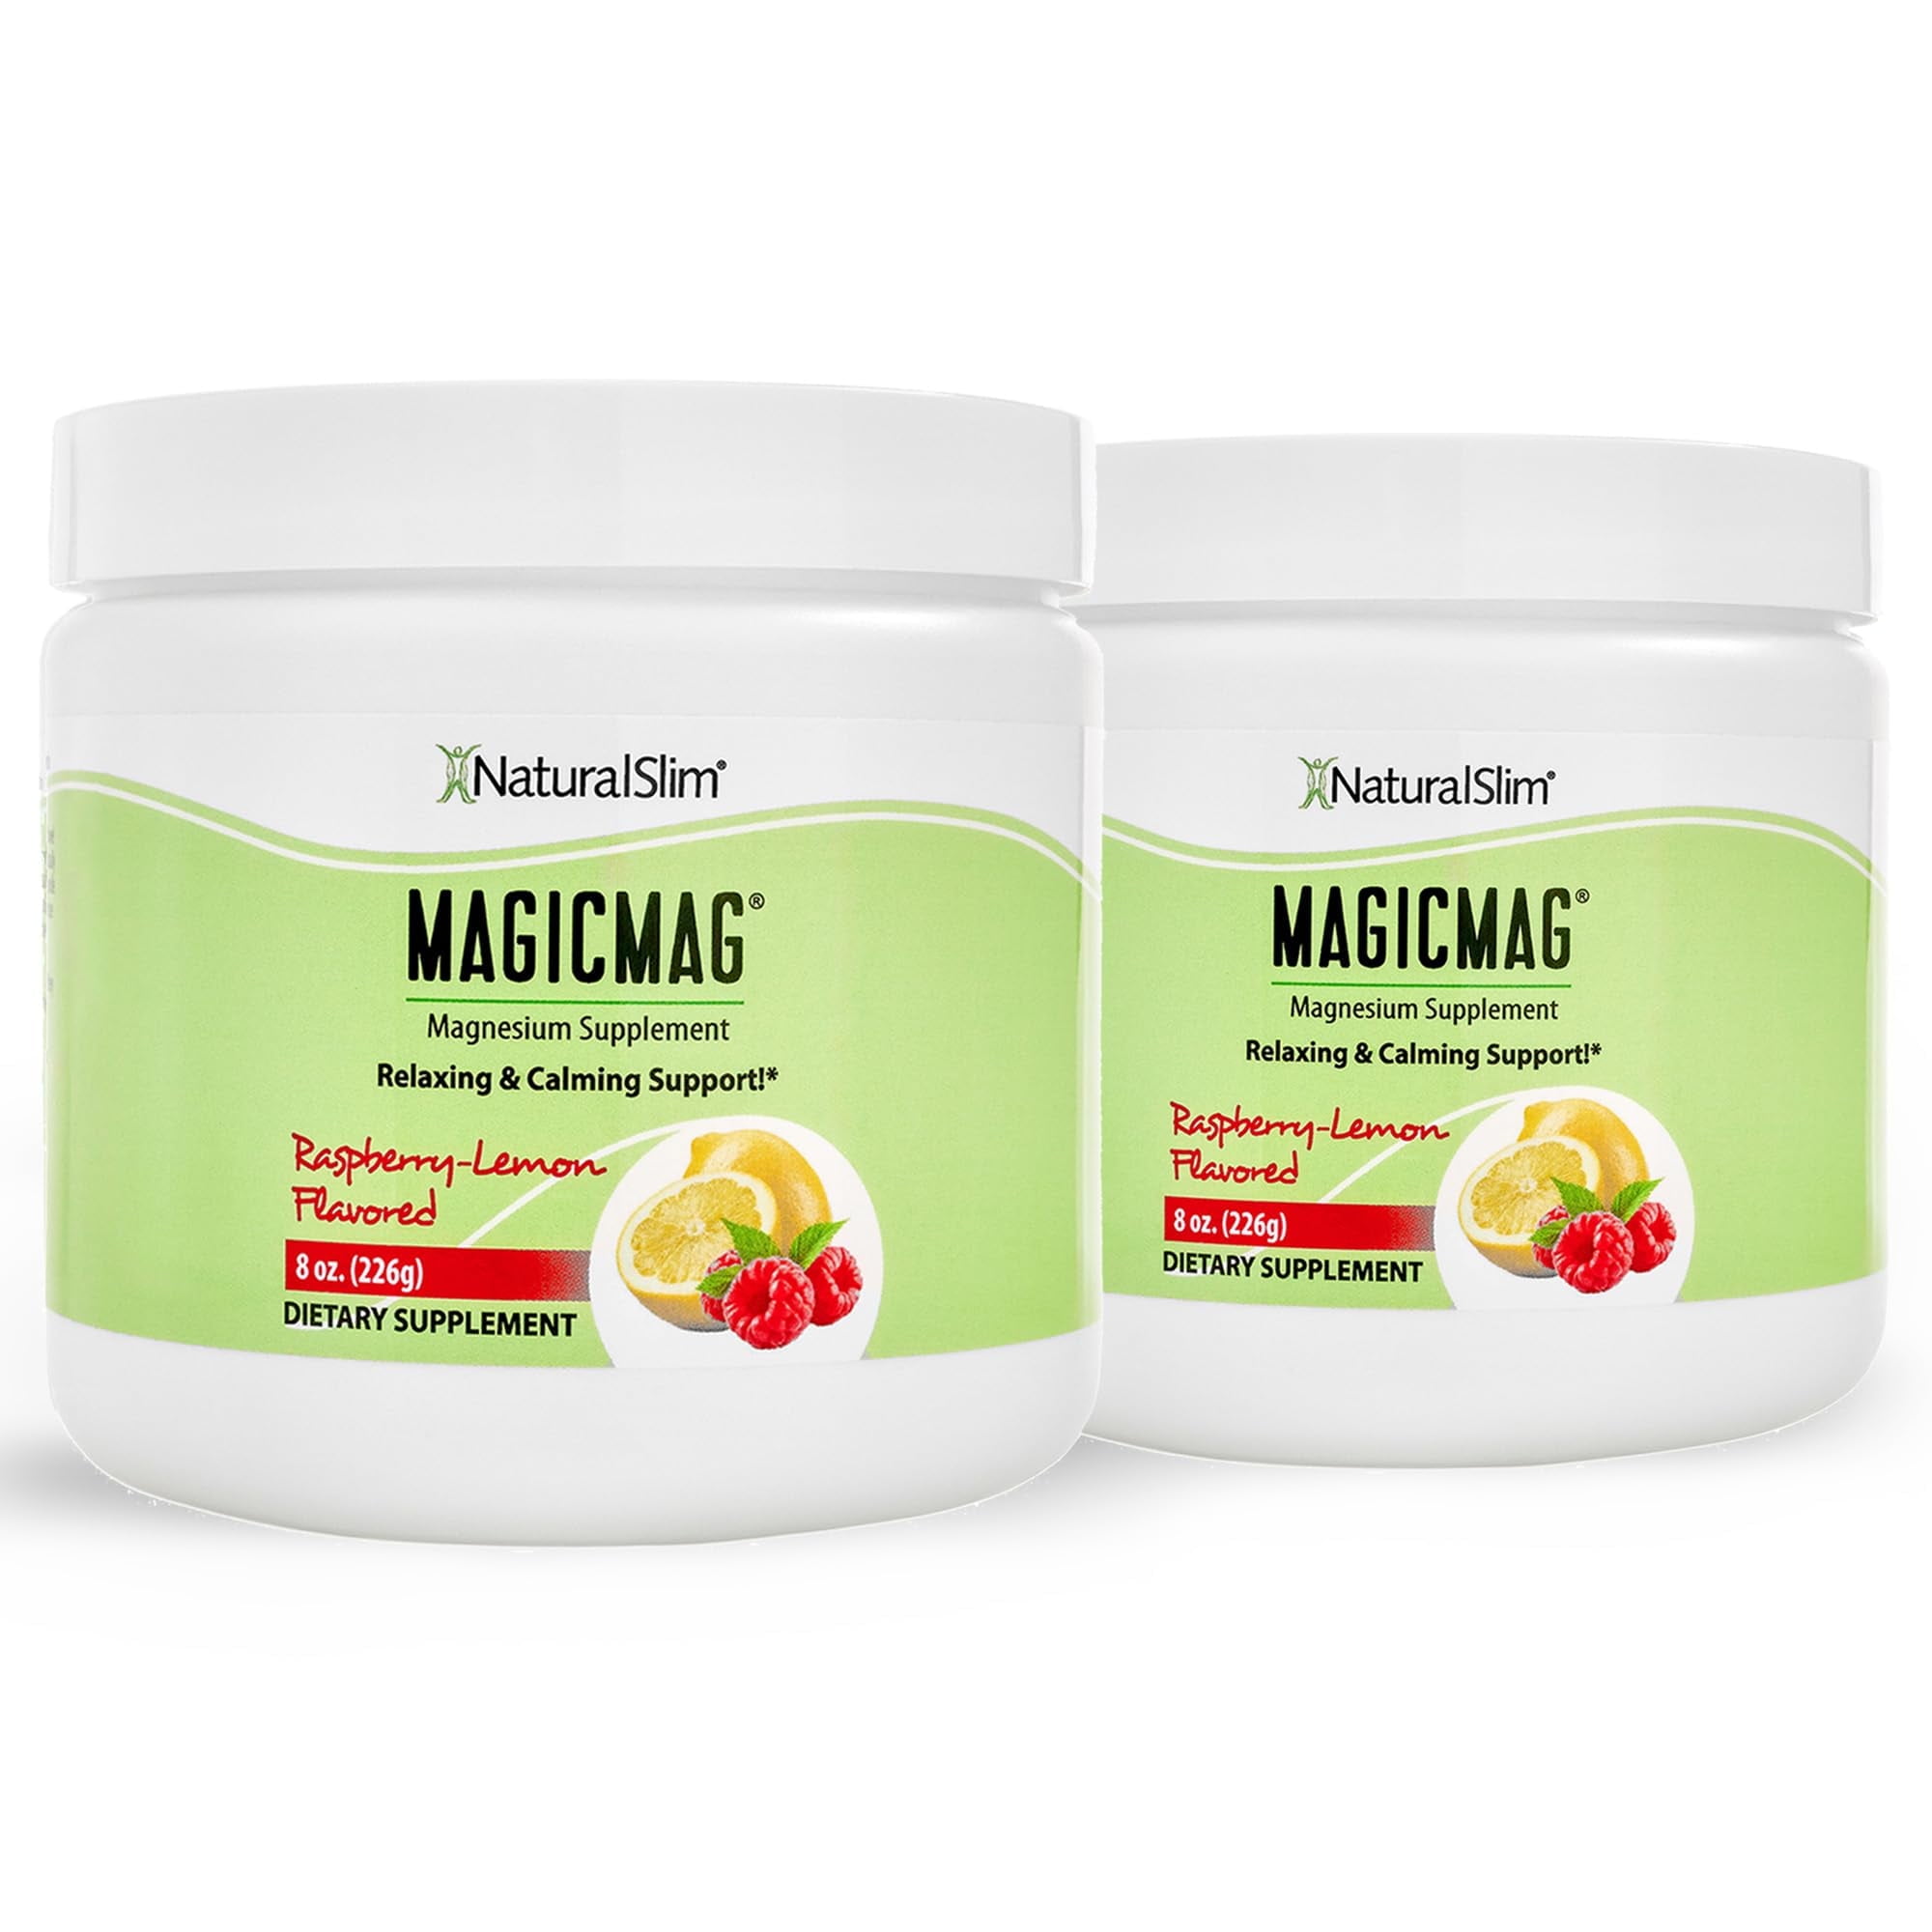 Polvo de citrato de magnesio puro NaturalSlim Magicmag: soporte para el  estrés, el estreñimiento, los músculos